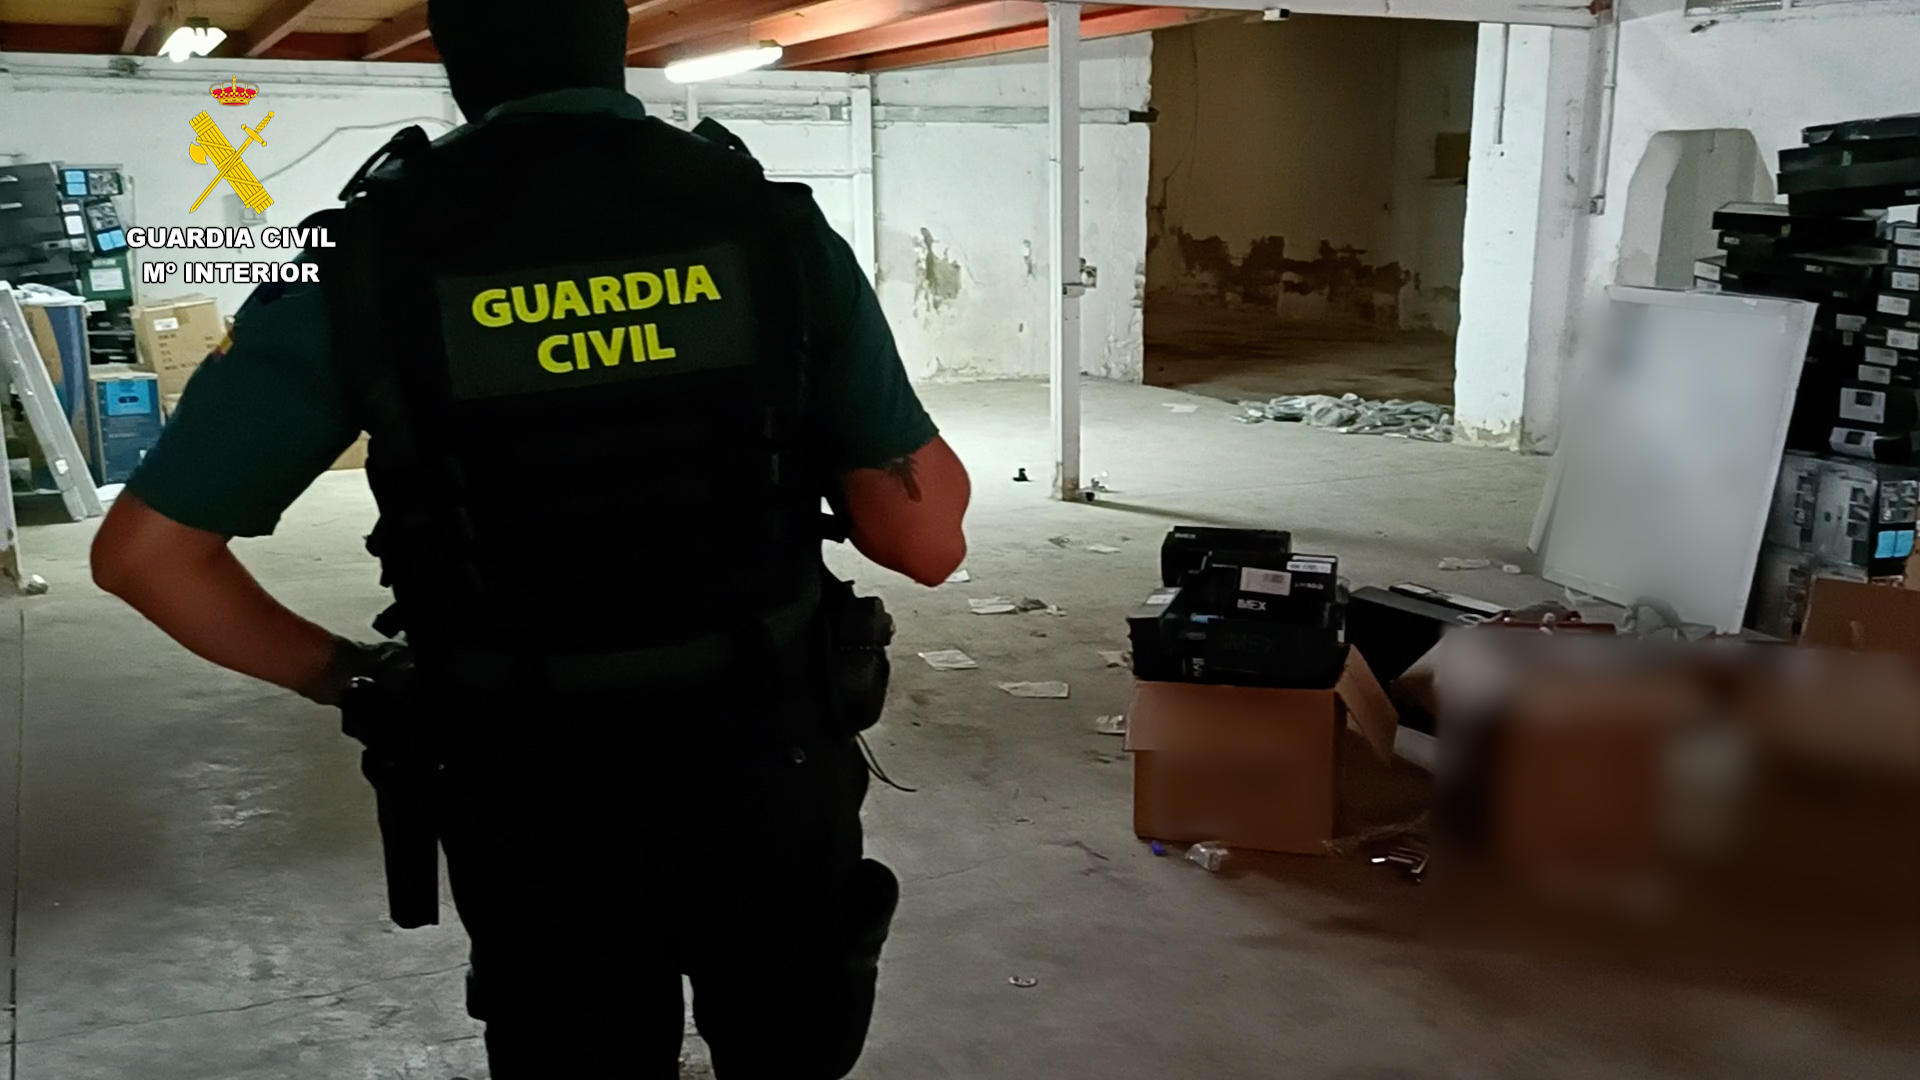 Momento de la operación, en una imagen compartida por la Guardia Civil.